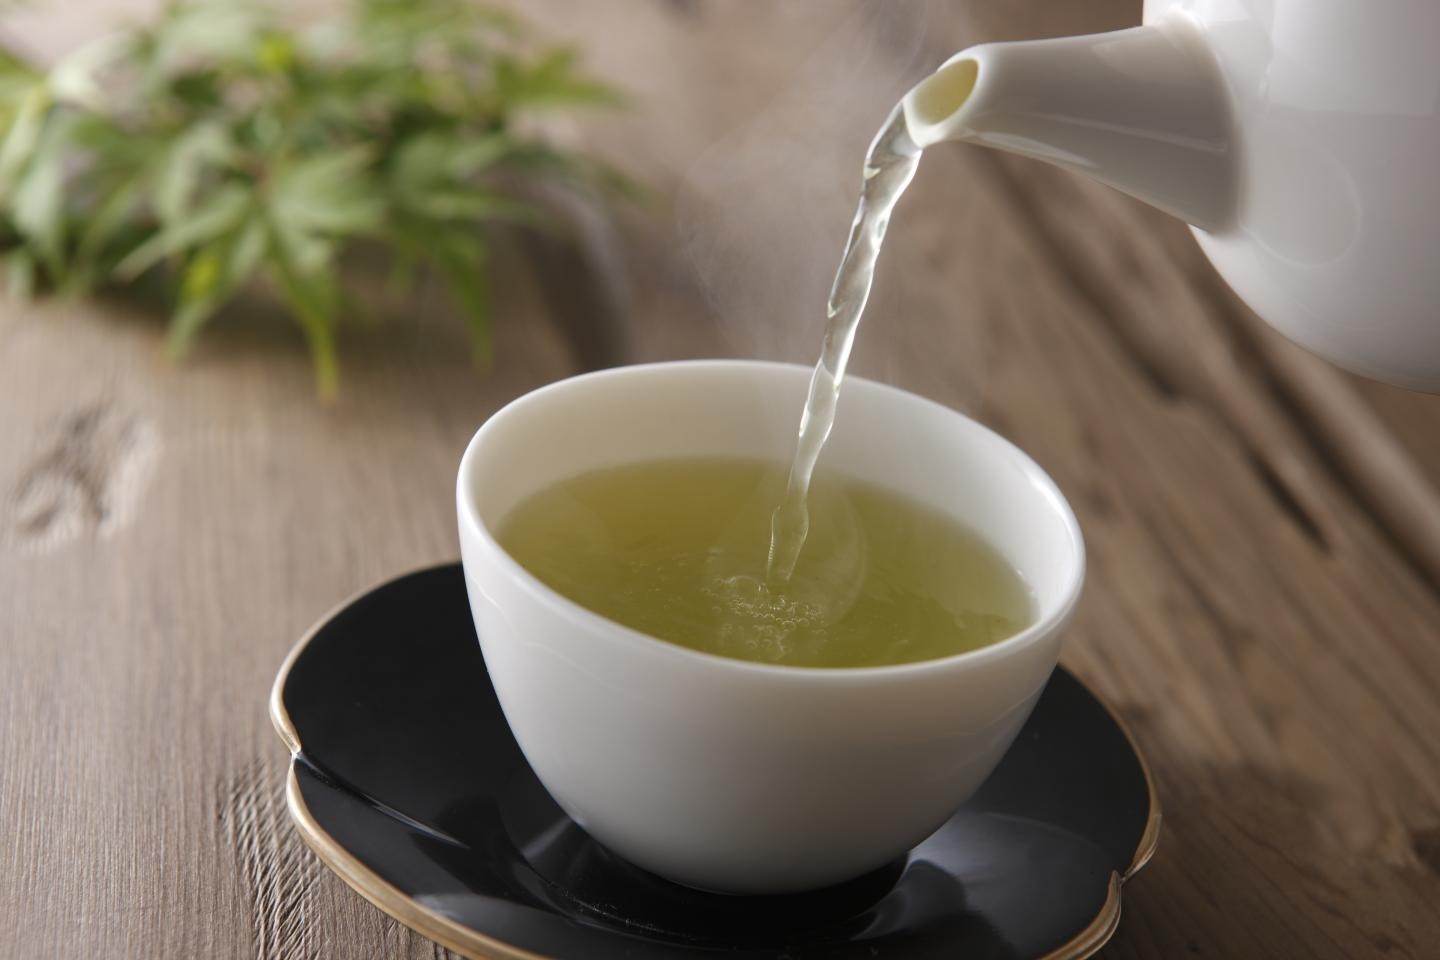 El té verde es excepcionalmente alto en flavonoides que pueden ayudar a mejorar la salud del corazón al reducir el colesterol malo (Europa Press)
